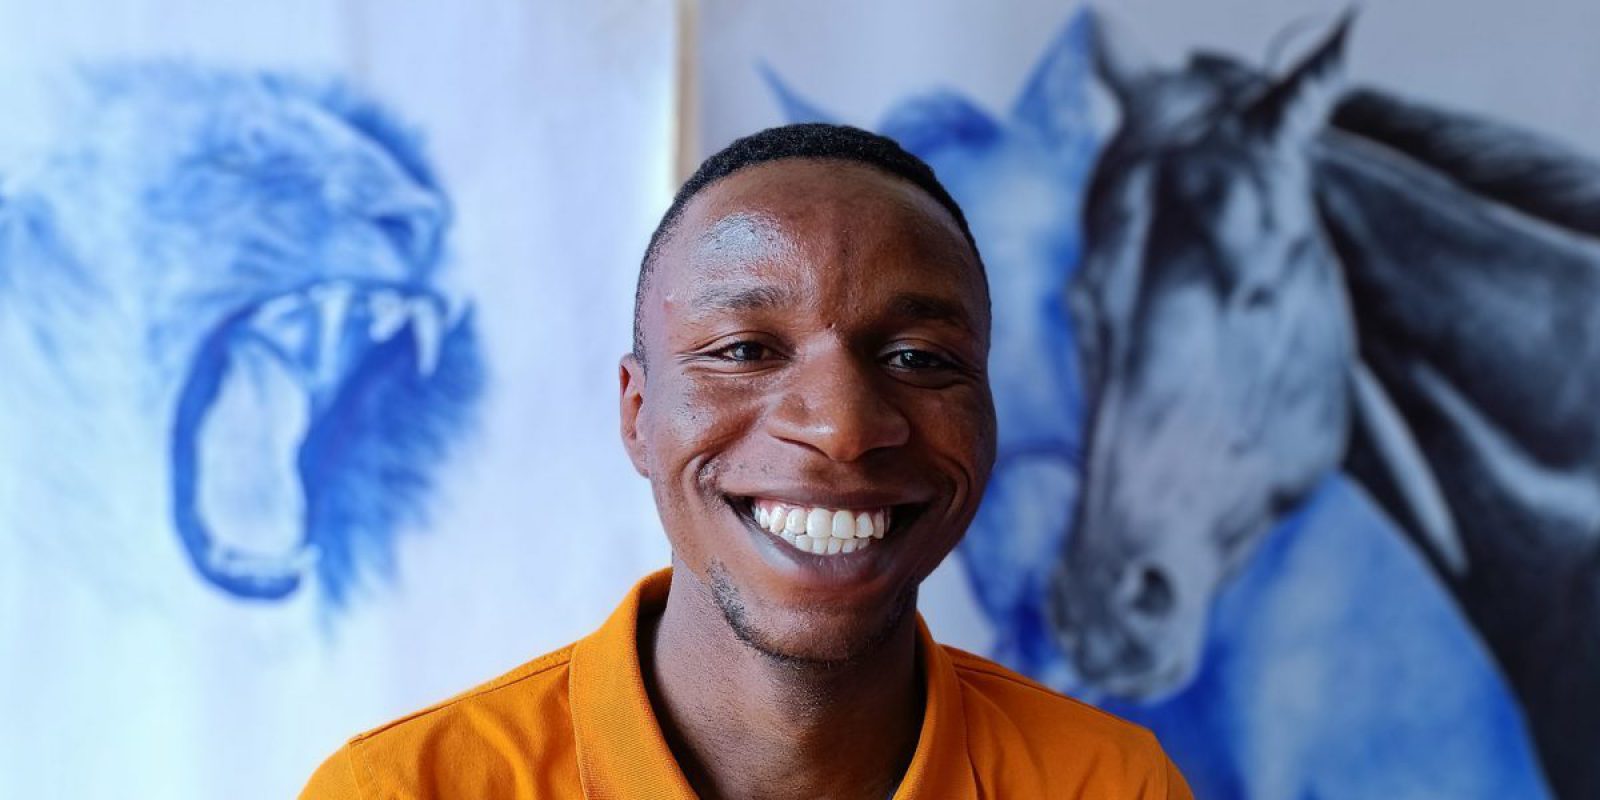 Serge, refugiado y artista con el lápiz posa con sus dibujos. Serge es un refugiado y artista con el lápiz que vive en Uganda donde fue patrocinado por el JRS para proseguir sus estudios.